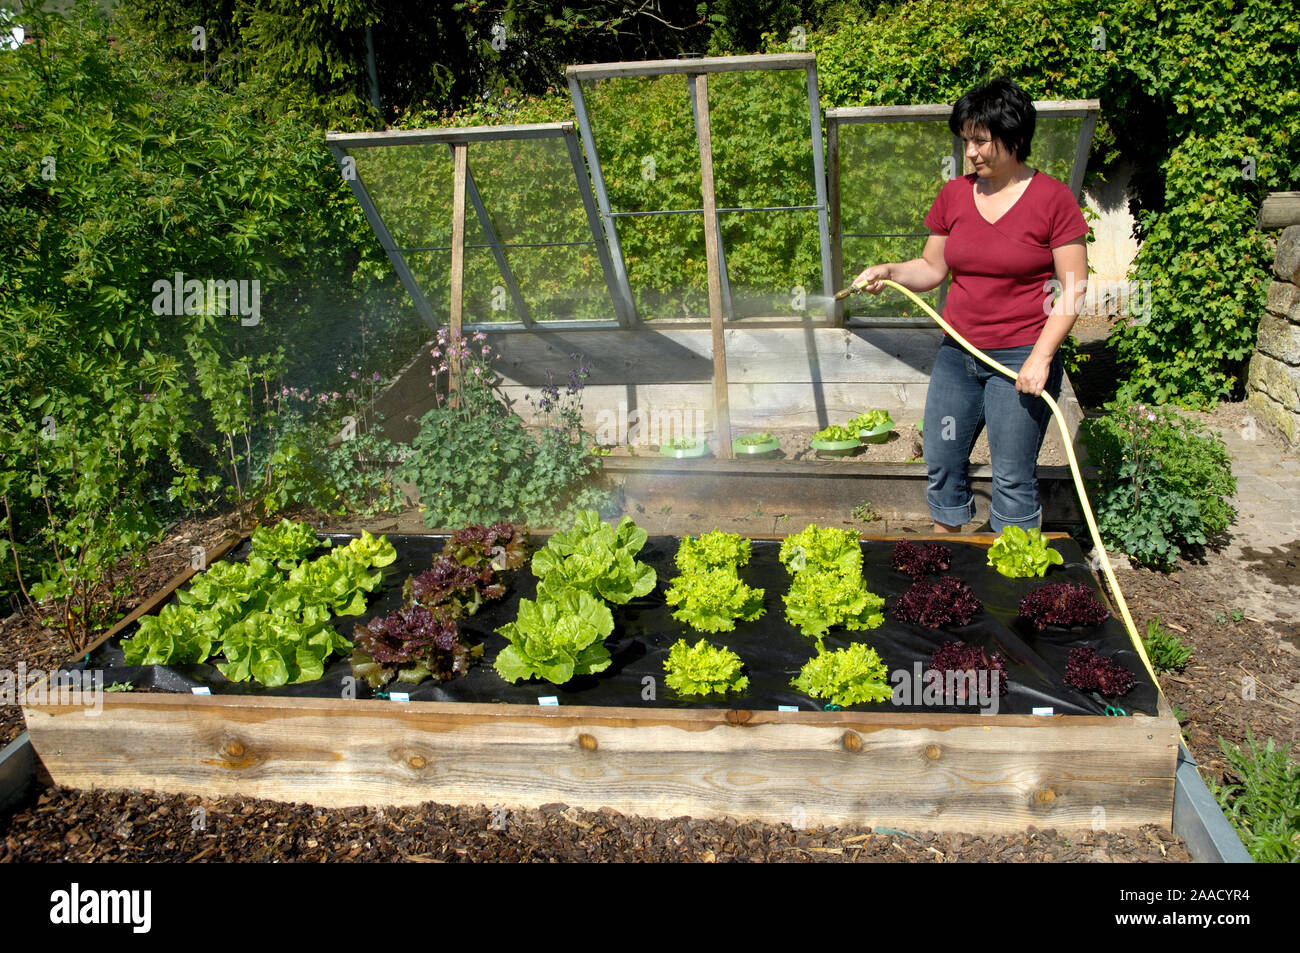 Woman poured salad bed in garden | Frau giesst Salatbeet im Garten Stock Photo